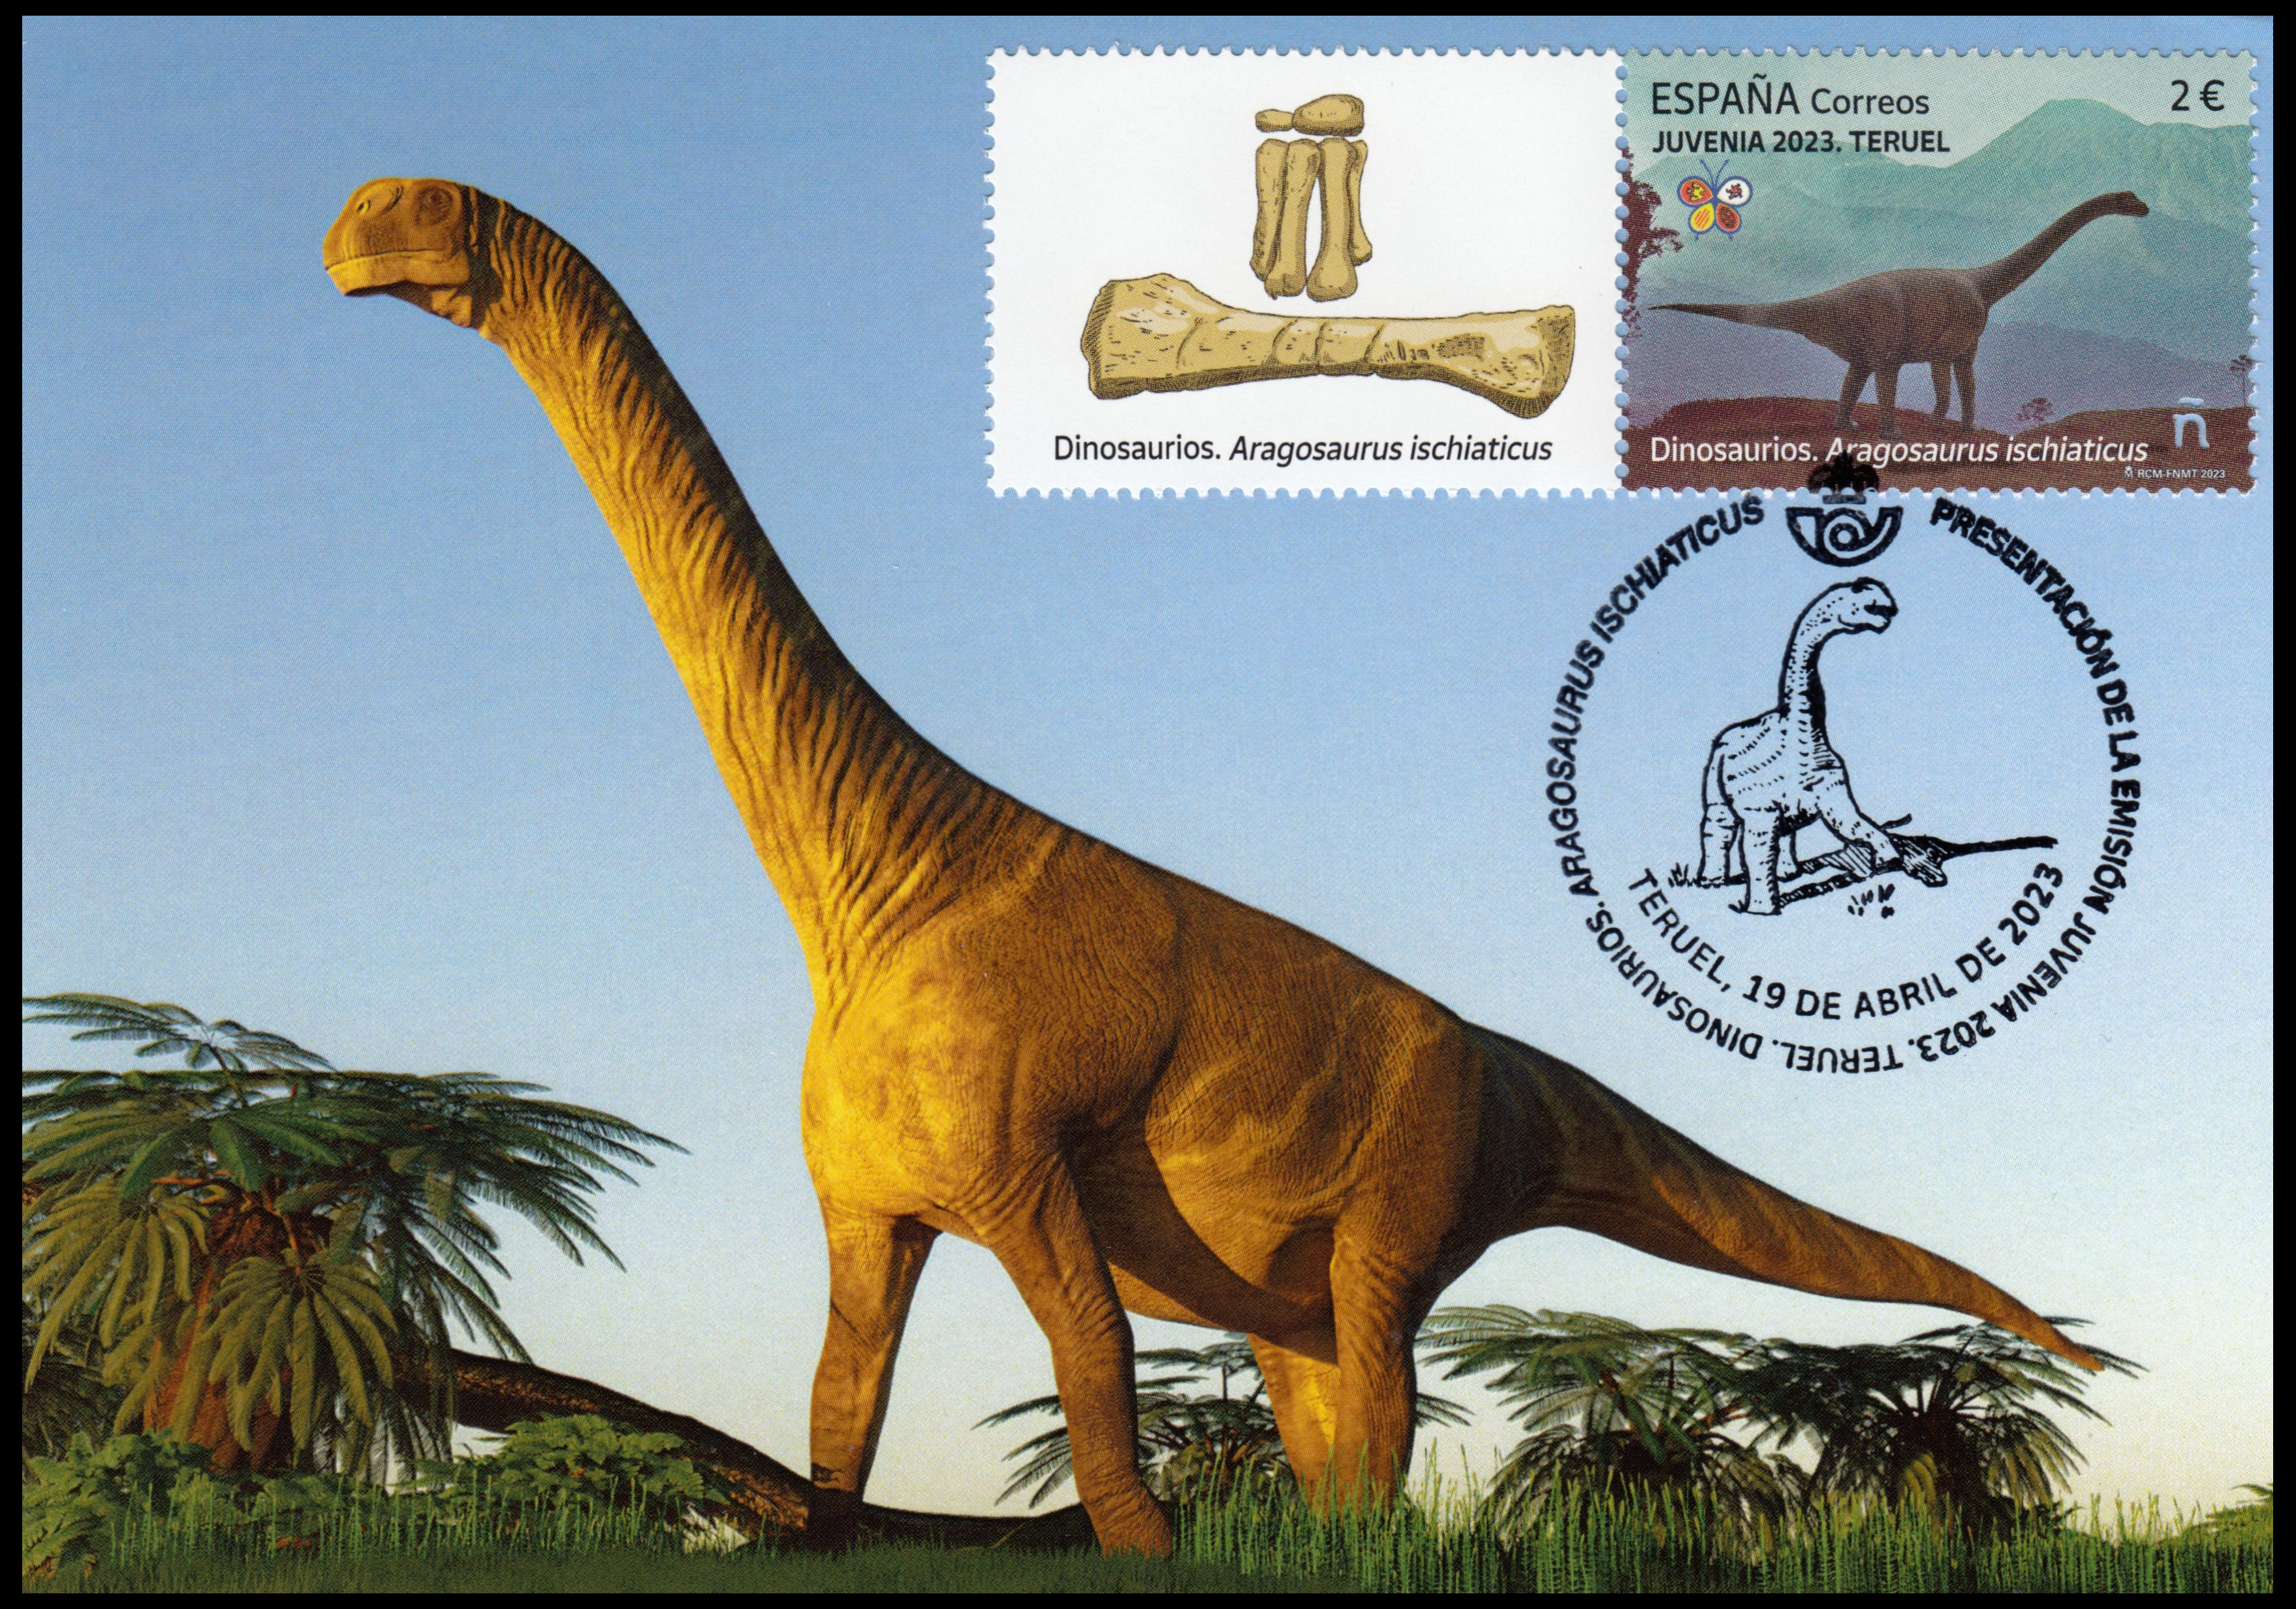 Dinosaur on Maxi Card of Spain